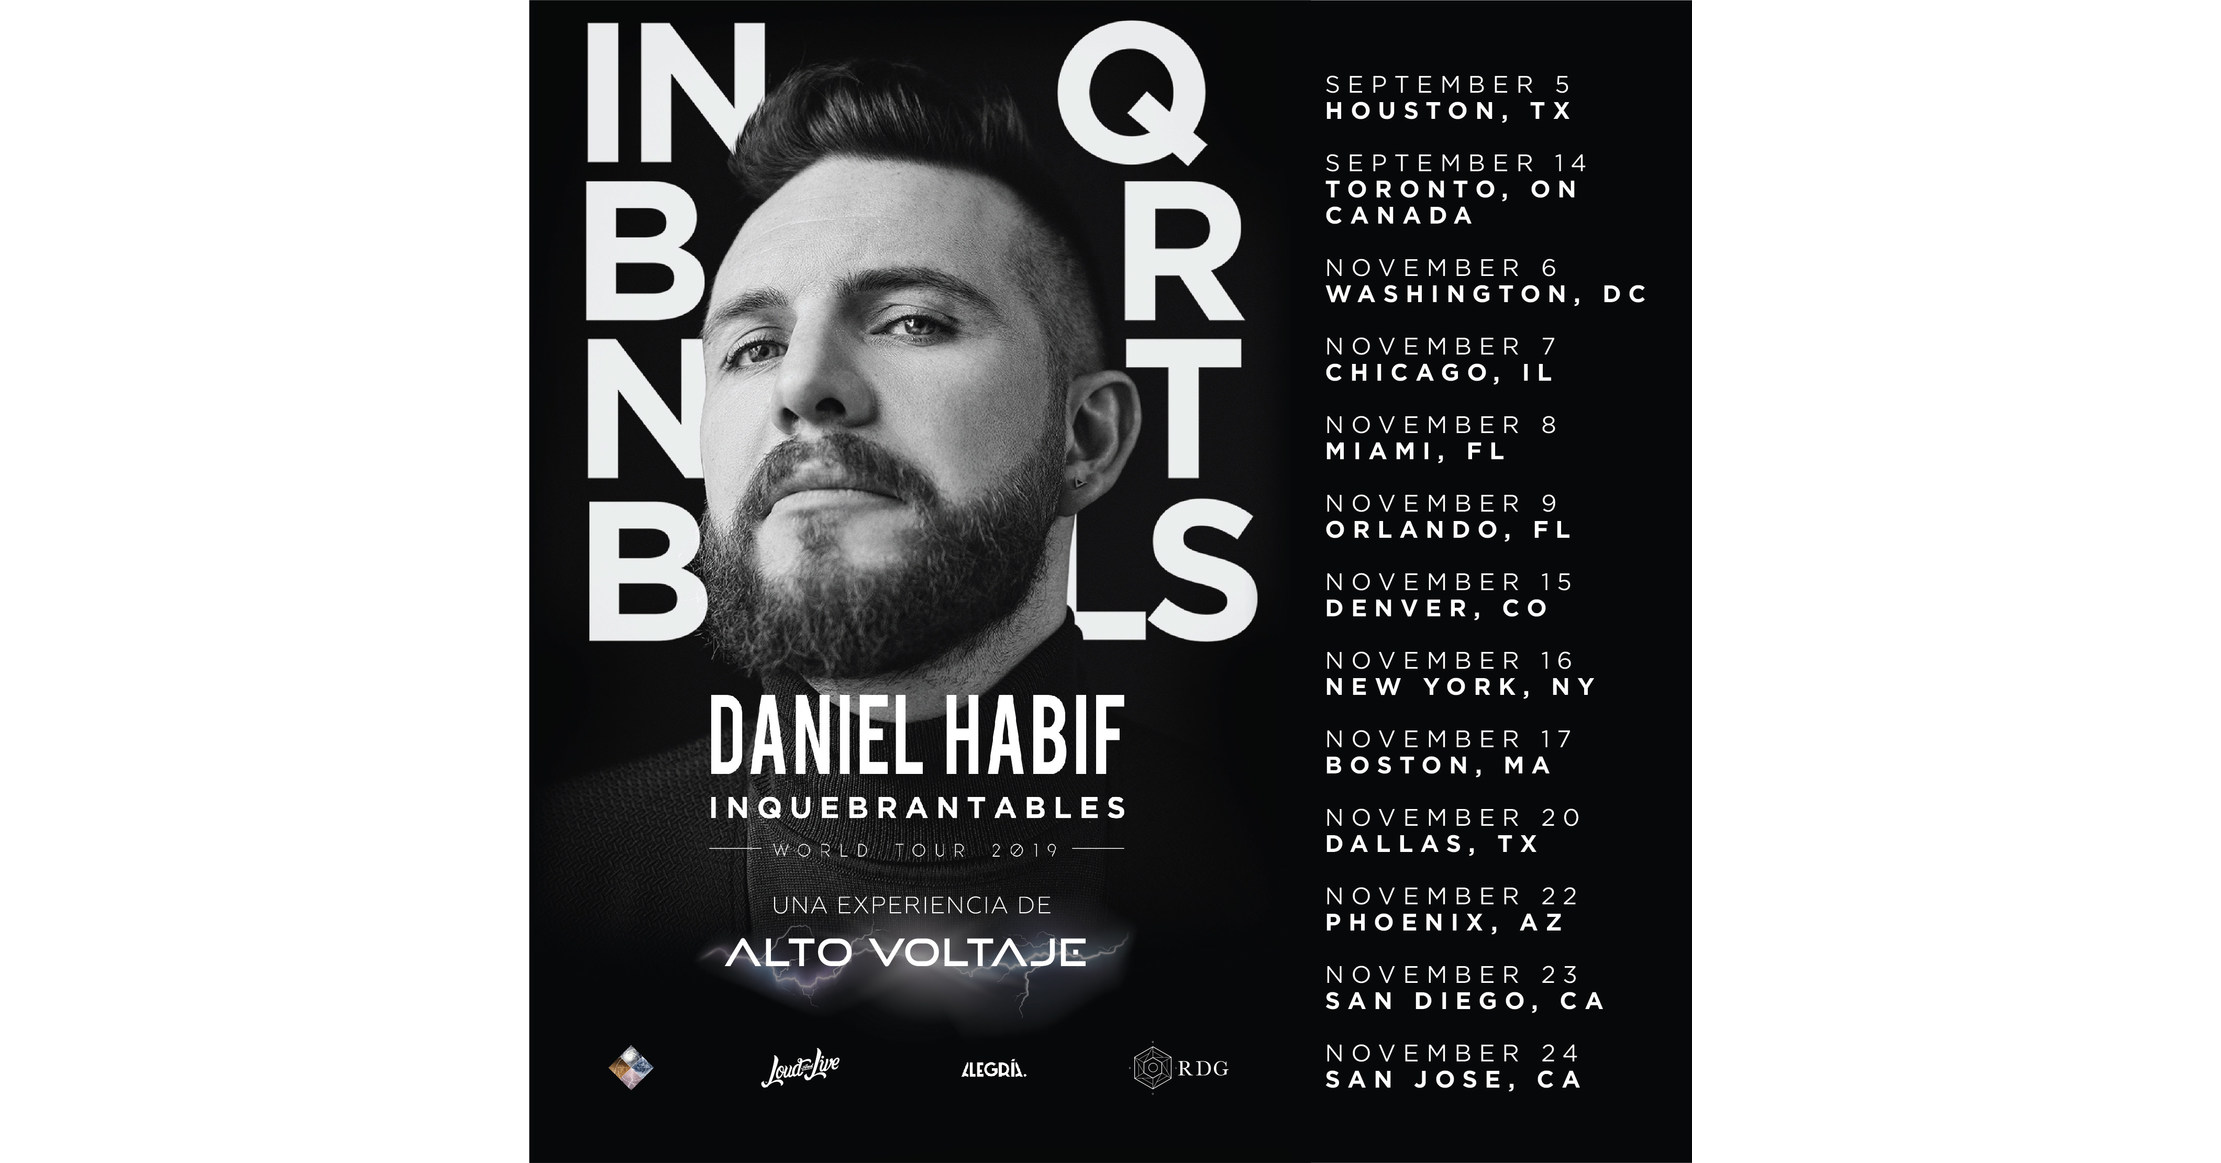 Daniel Habif confirma tour en los Estados Unidos